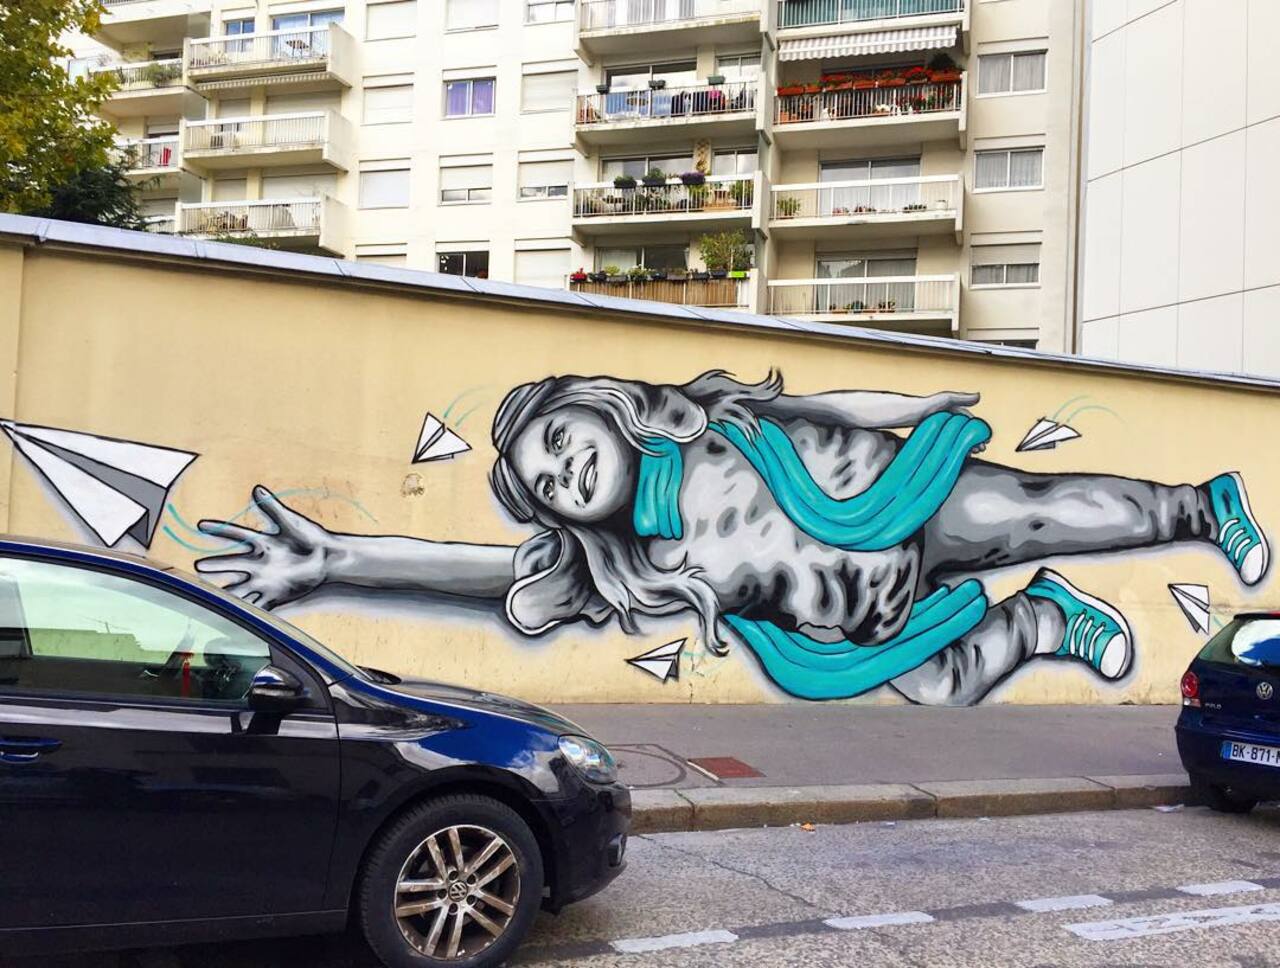 #Paris #graffiti photo by @jeanlucr http://ift.tt/1WQDJ4g #StreetArt http://t.co/mp1Ow5Nk6r